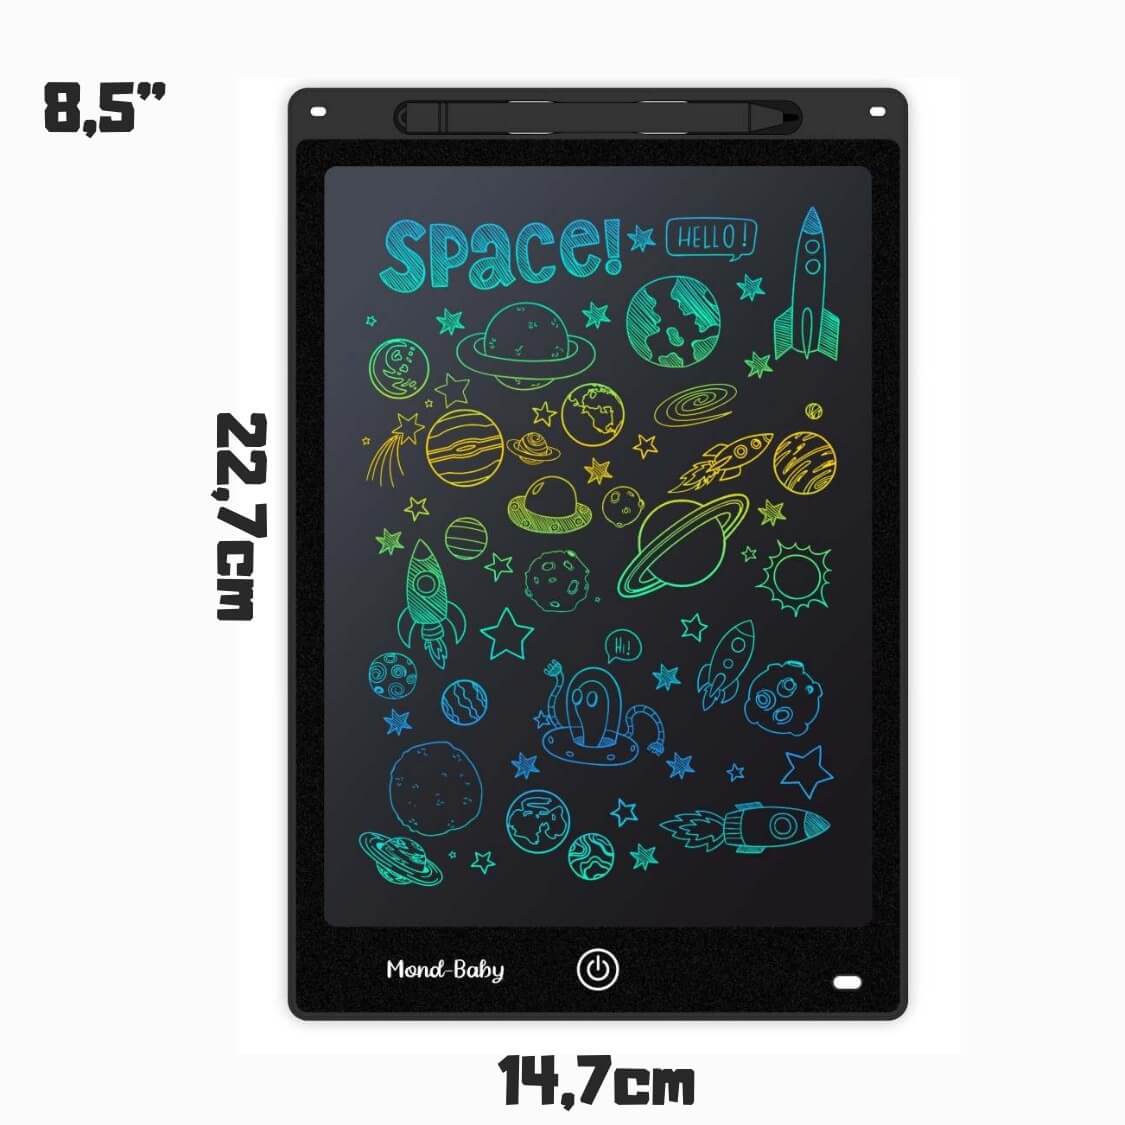 Mond-Baby™ LCD Mal- & Schreibtafel